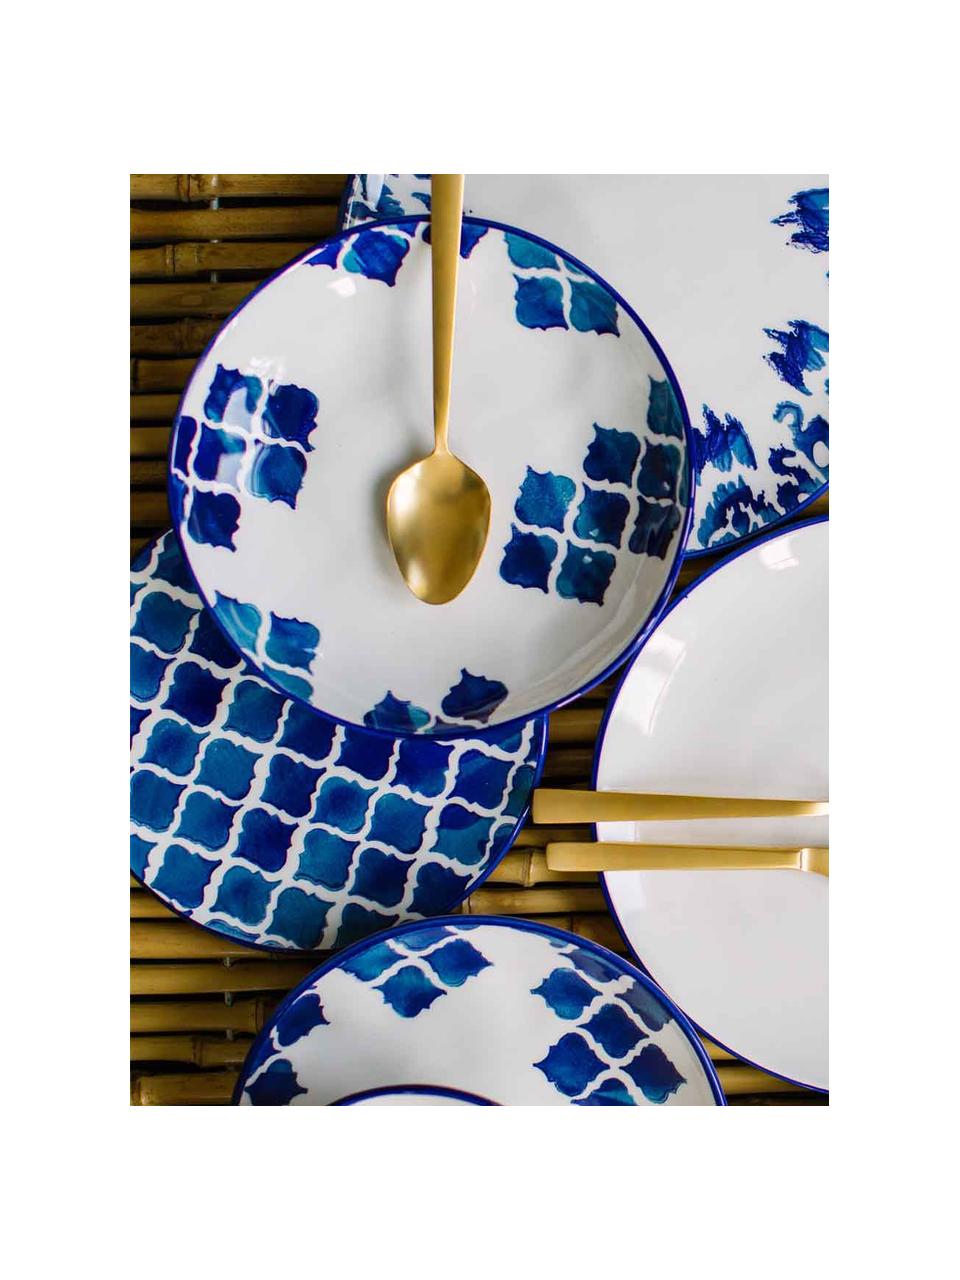 Handgemachte Frühstücksteller Ikat, 6 Stück, Keramik, Weiss, Blau, Ø 21 cm